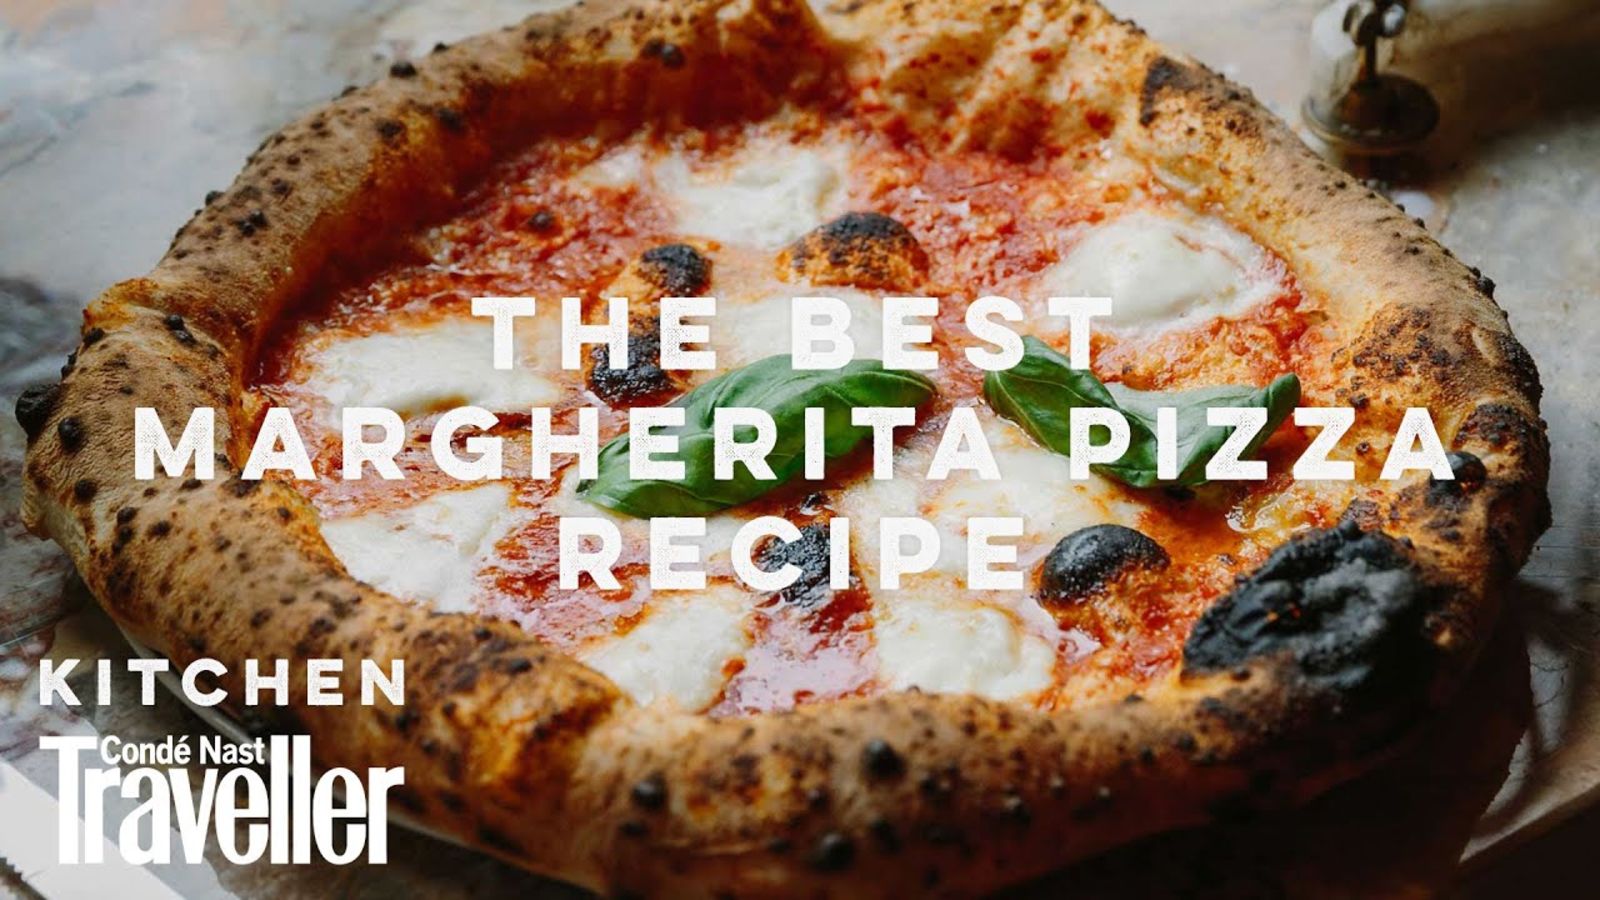 The ultimate Margherita pizza recipe